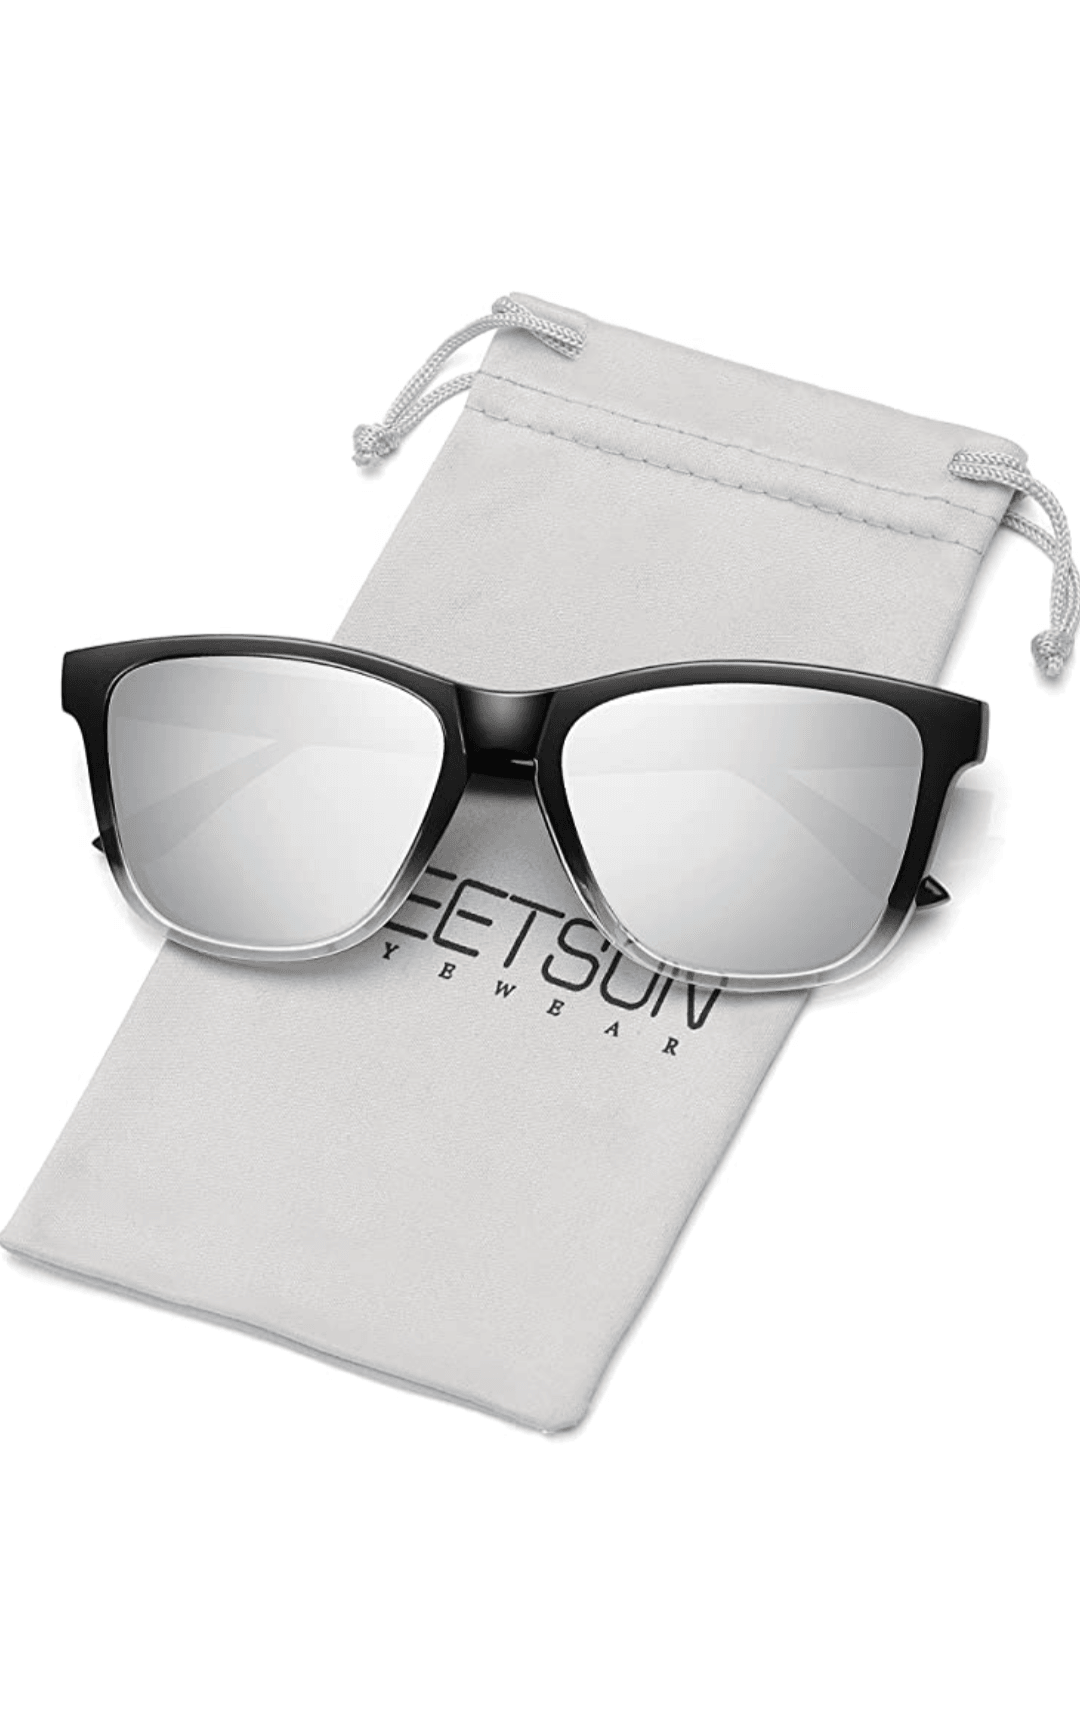 Cokritsm Organizador de gafas de sol blanco de 16 ranuras